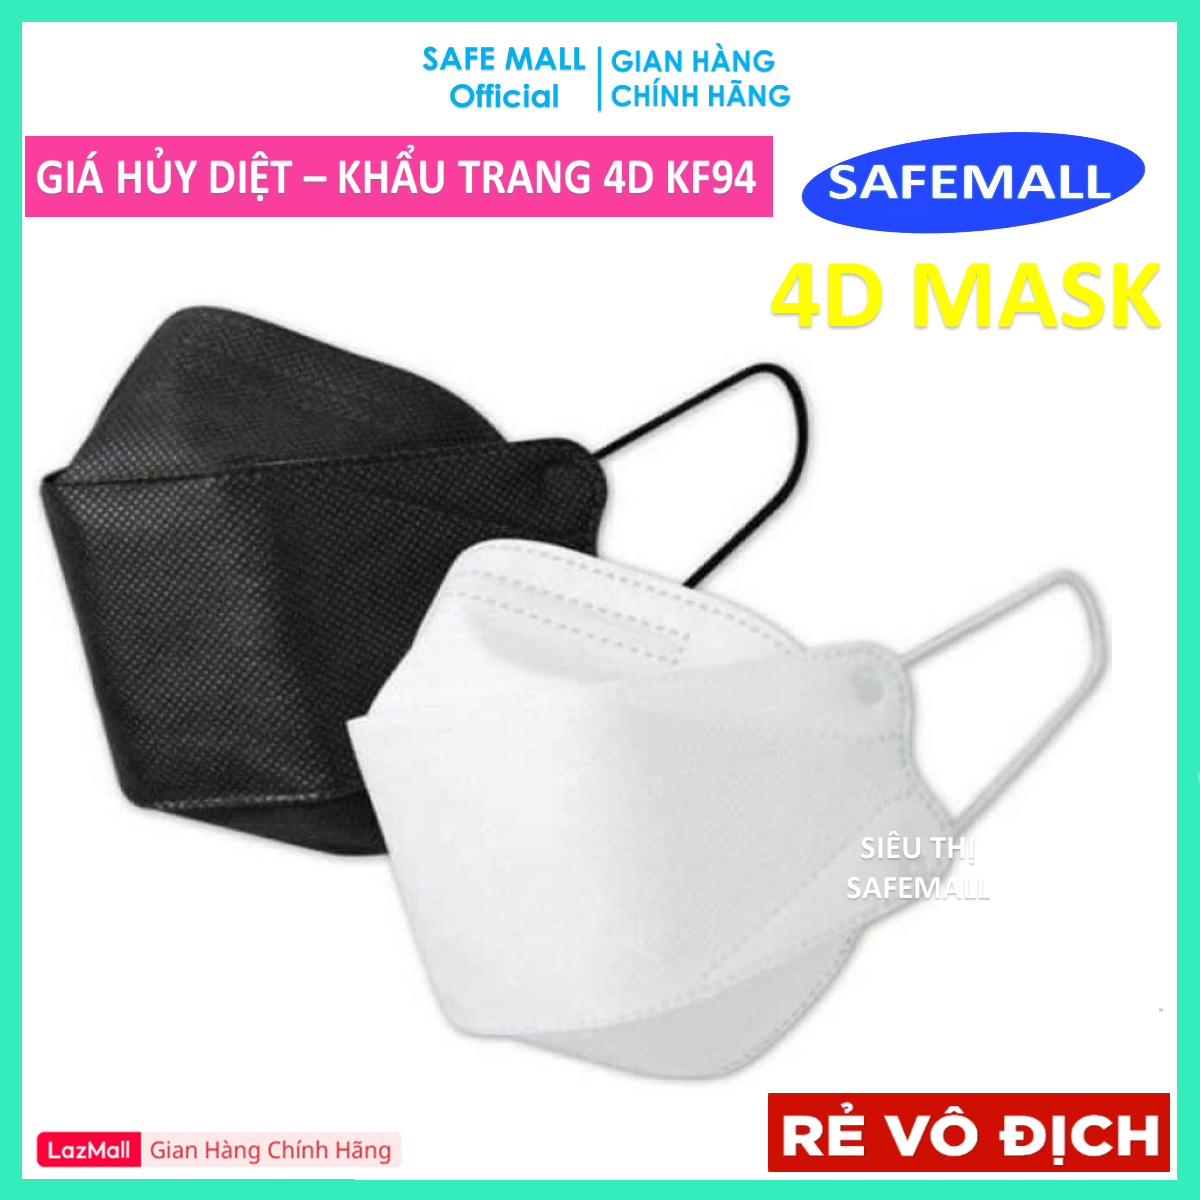 Giá Sỉ Hộp 100 Chiếc Khẩu Trang Y Tế 4D Mask KF94 Công Nghệ Hàn Quốc 4 Lớp Vải Kháng Khuẩn, Kháng Bụi Mịn lên đến 95%, đạt tiêu chuẩn ISO – Hàng Chính Hãng SAFEMALL OFFICIAL